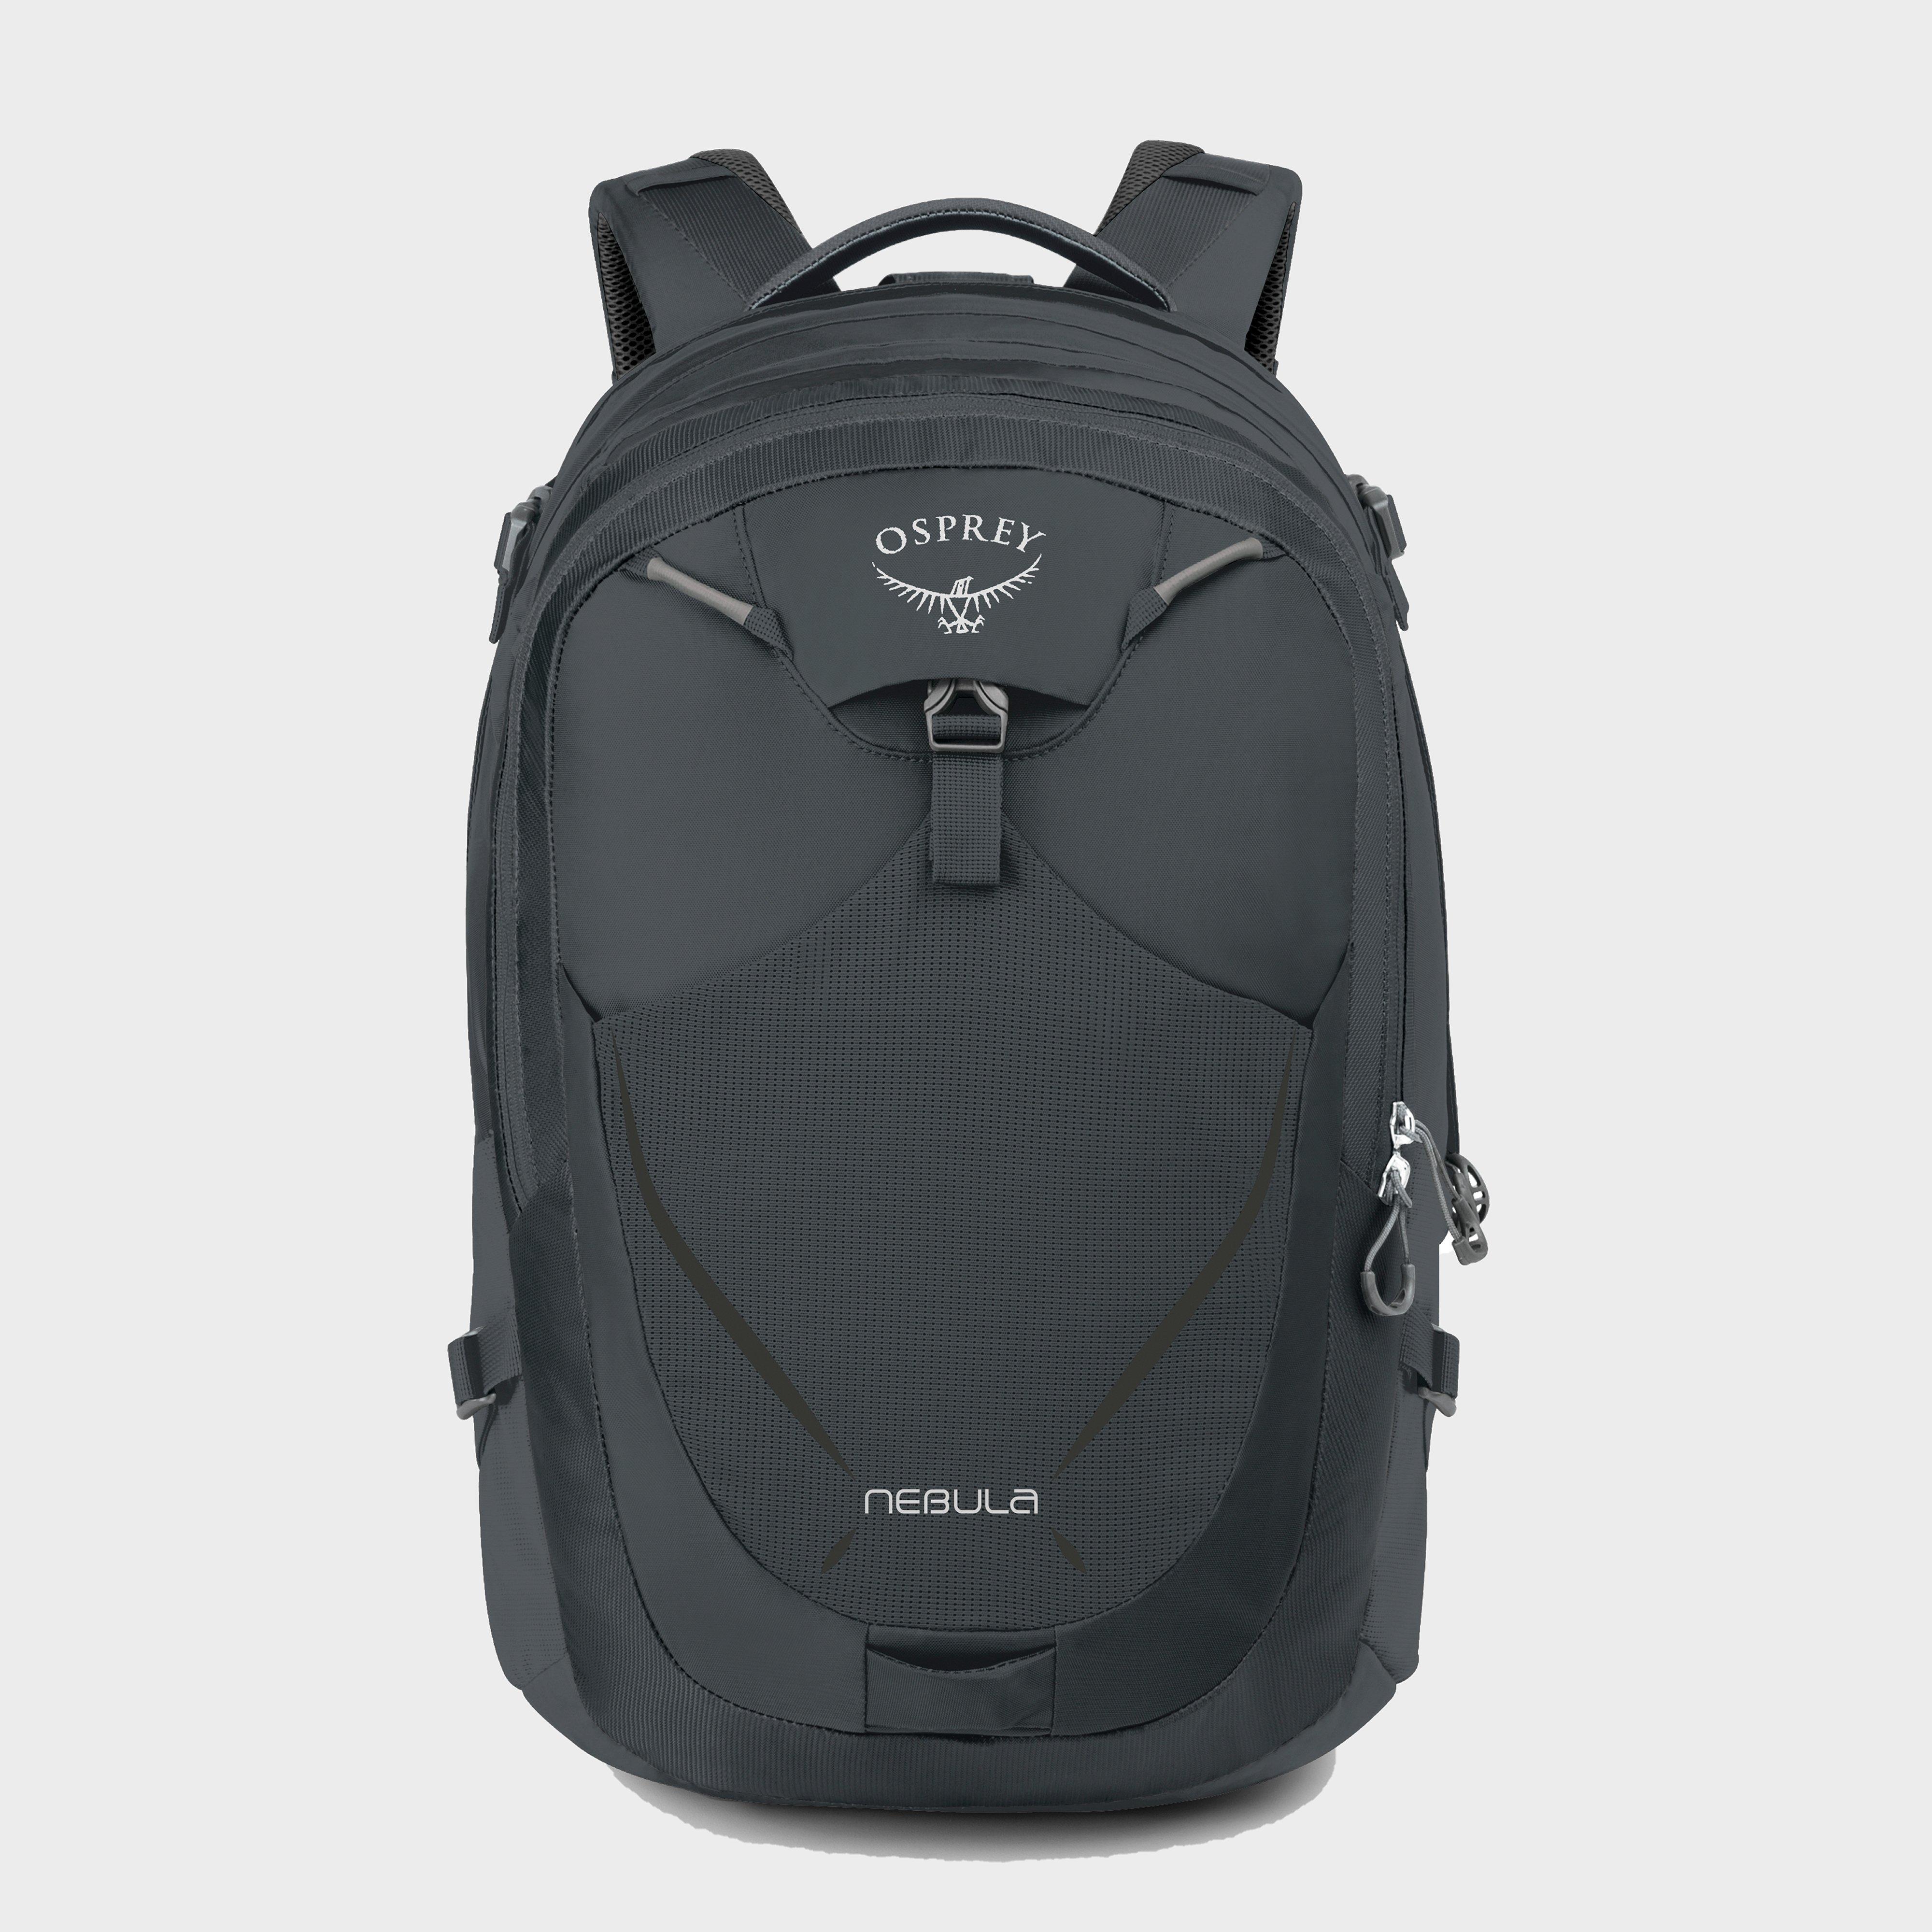 Osprey Nebula Backpack Review